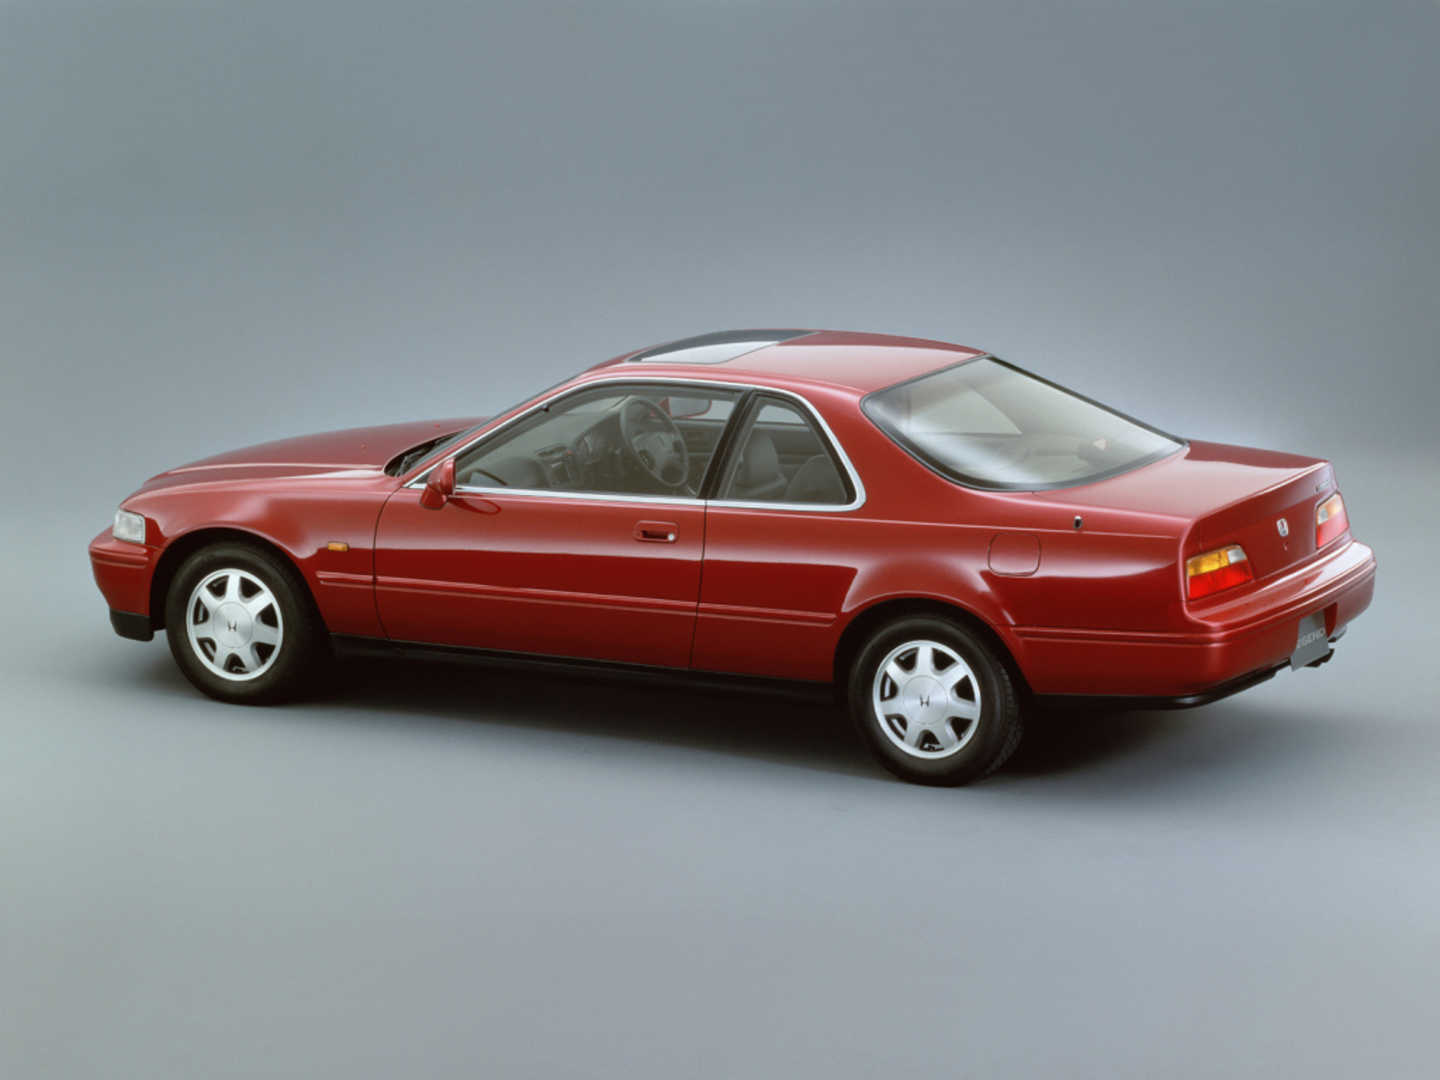 Honda Legend rouge vue de profil